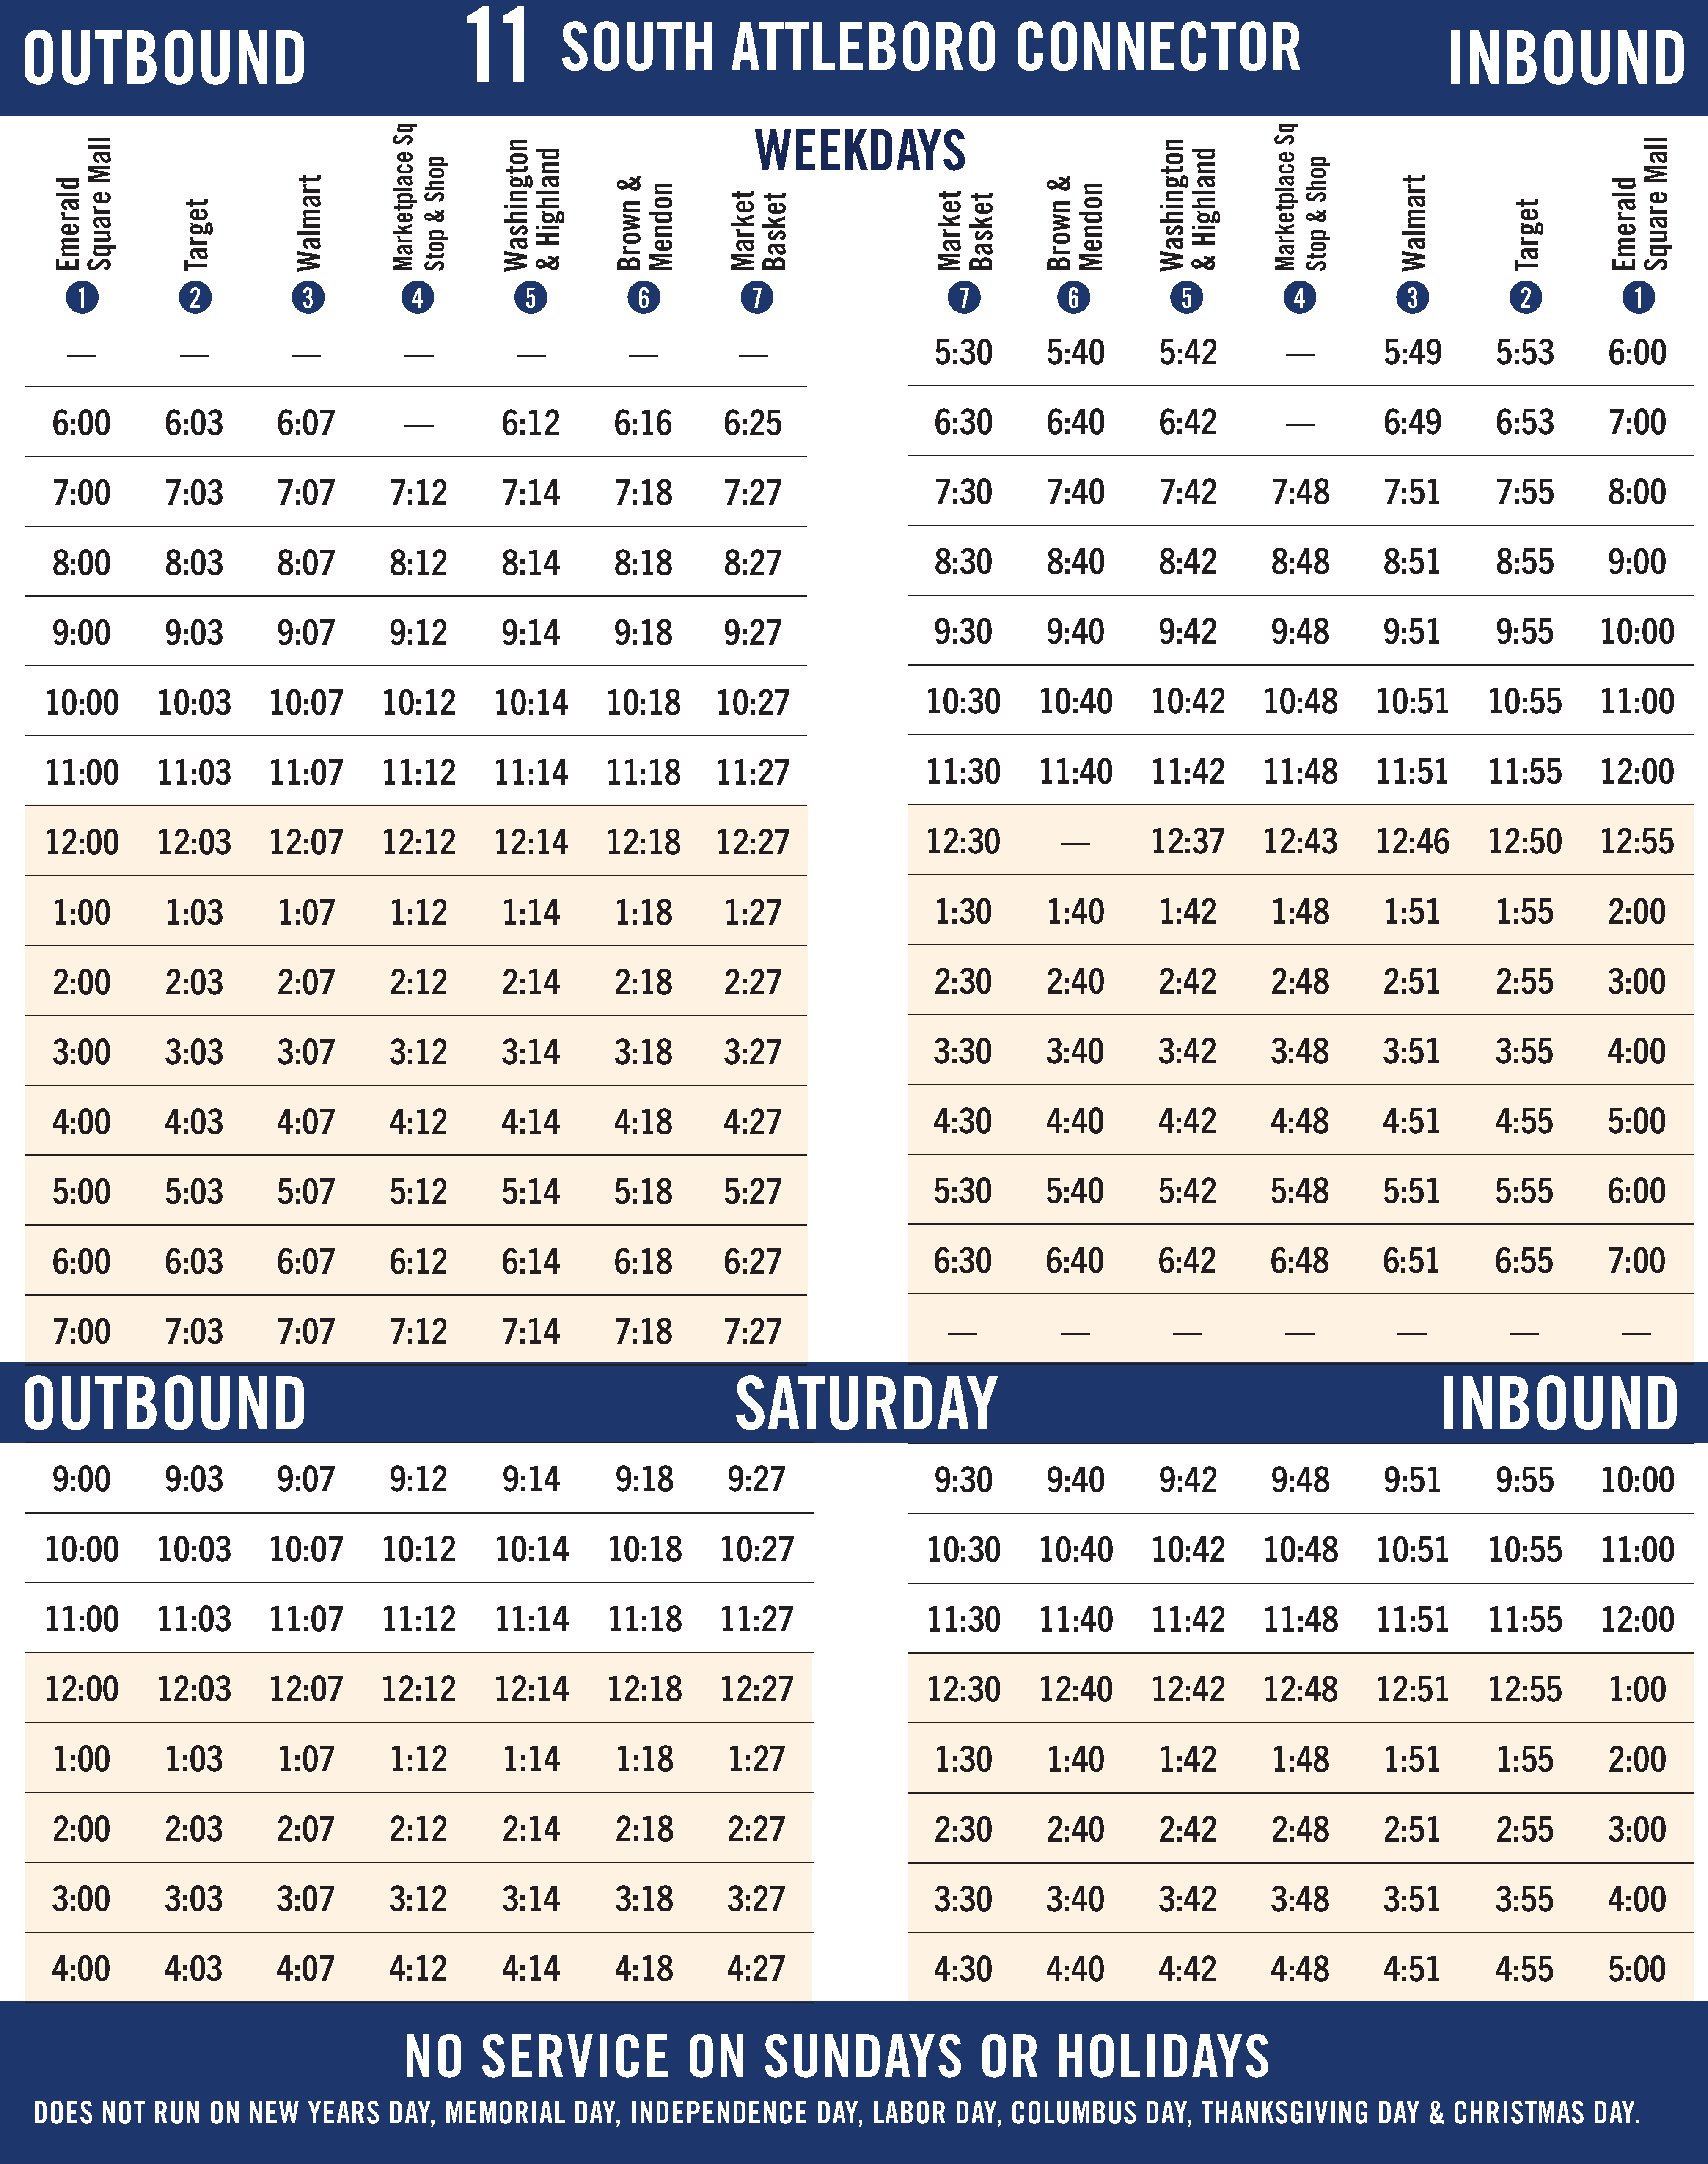 GATRA Route 11 Timetable